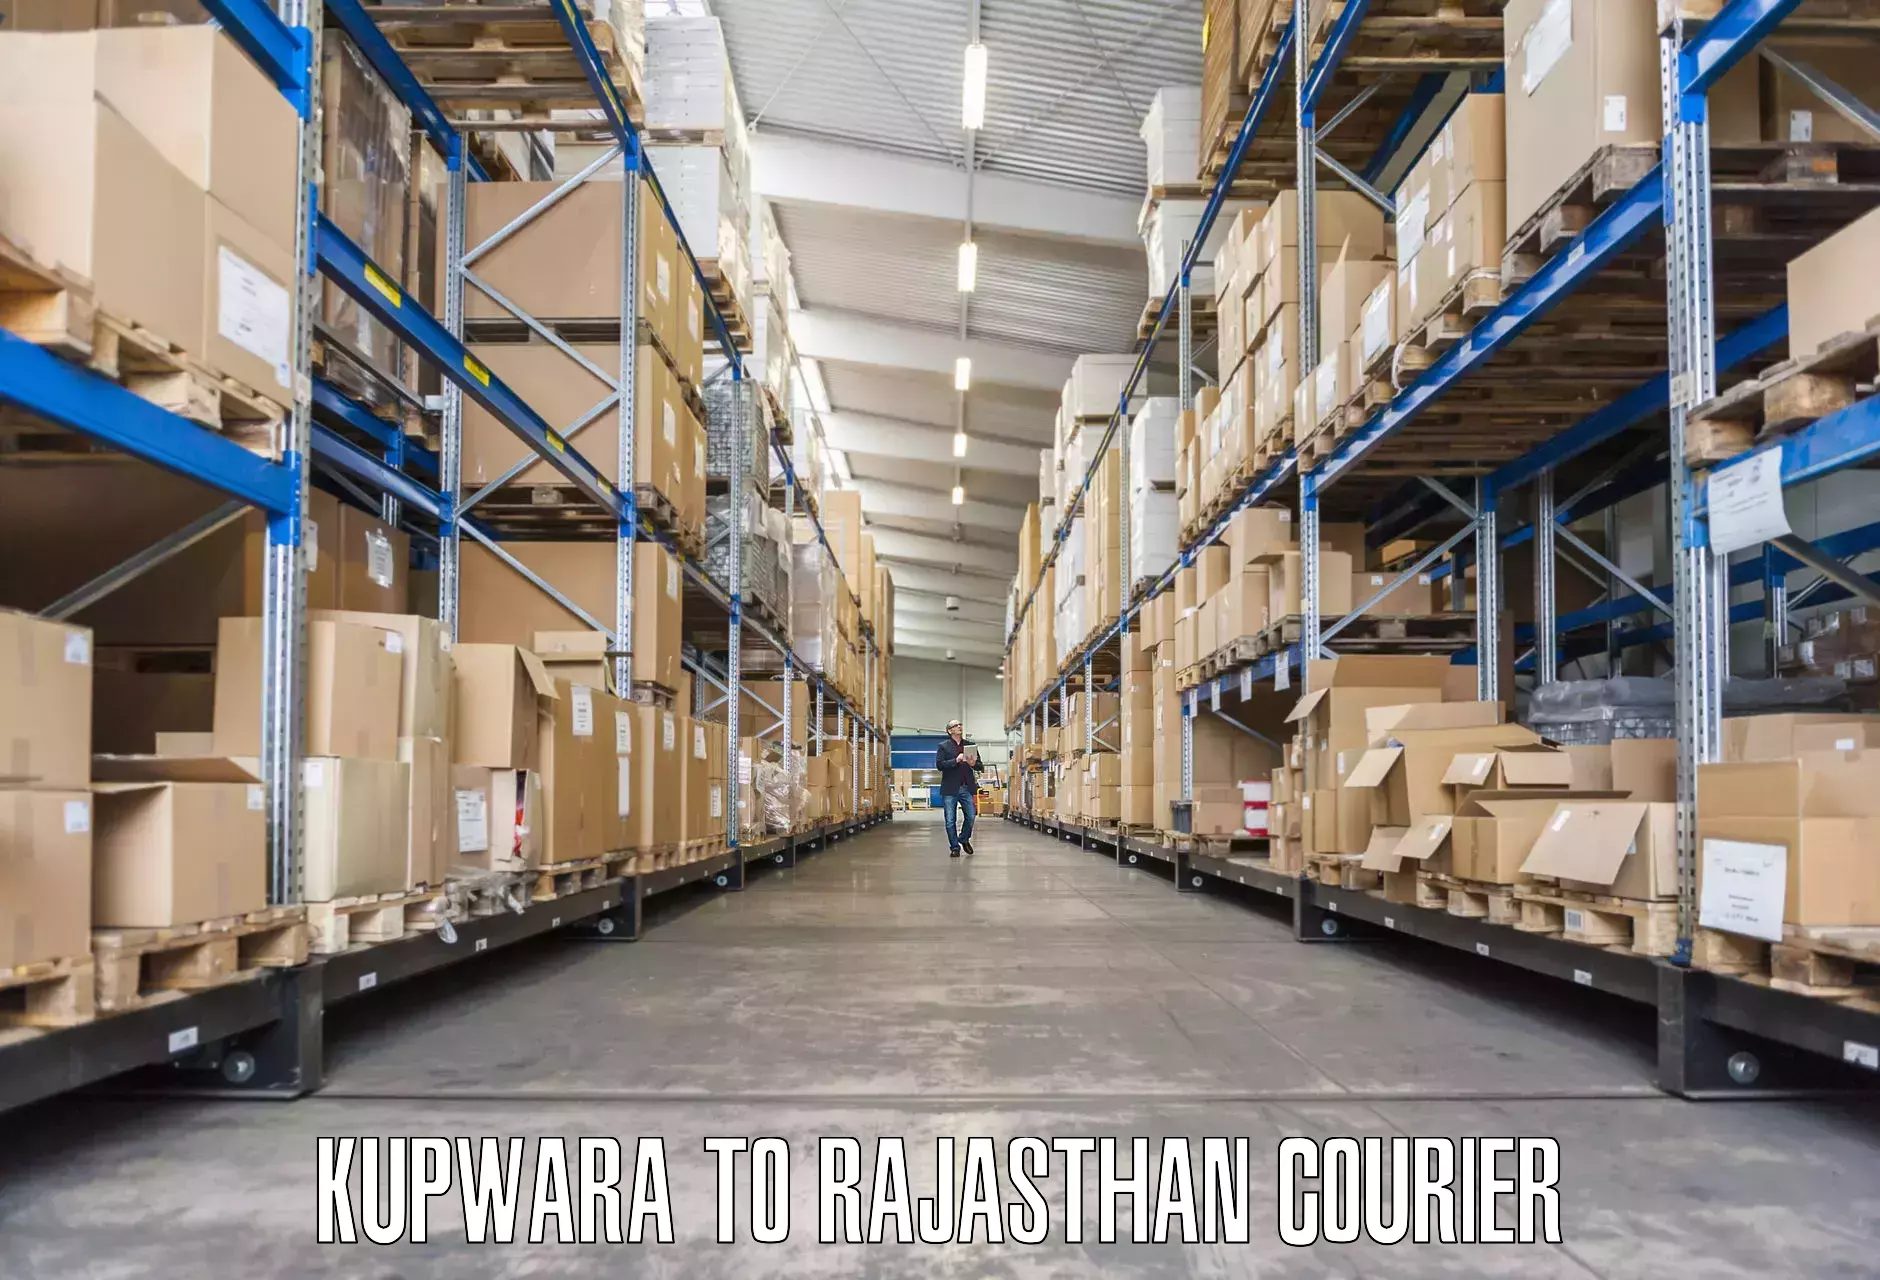 Furniture transport experts Kupwara to Khairthal